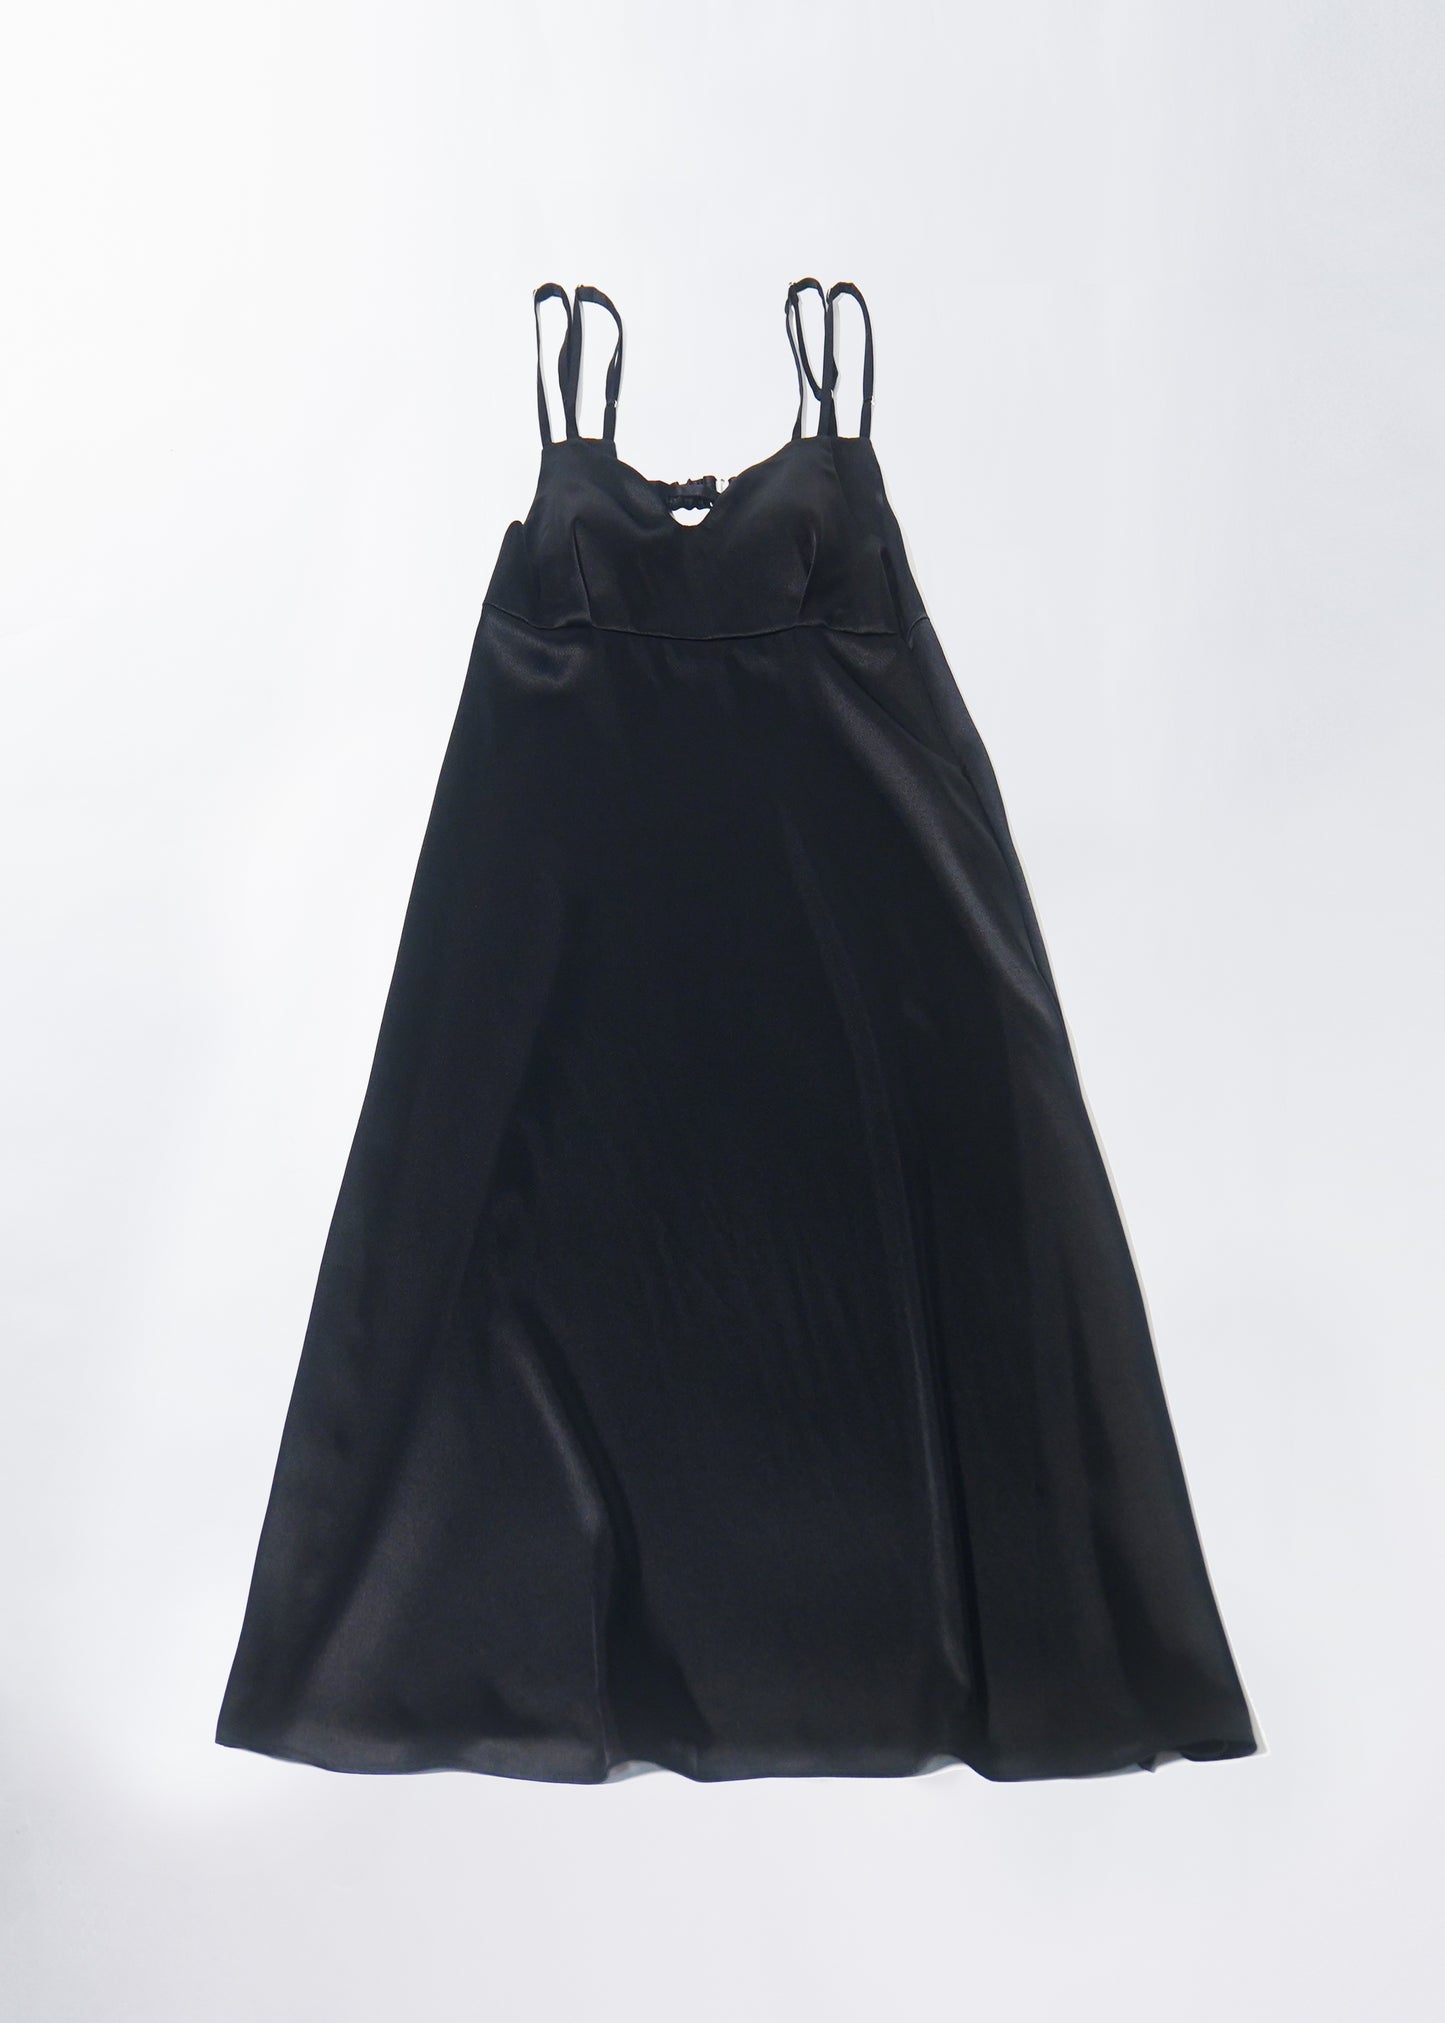 φ0.1 inch dots Layerd Ballon Sleeve Dress BLACK